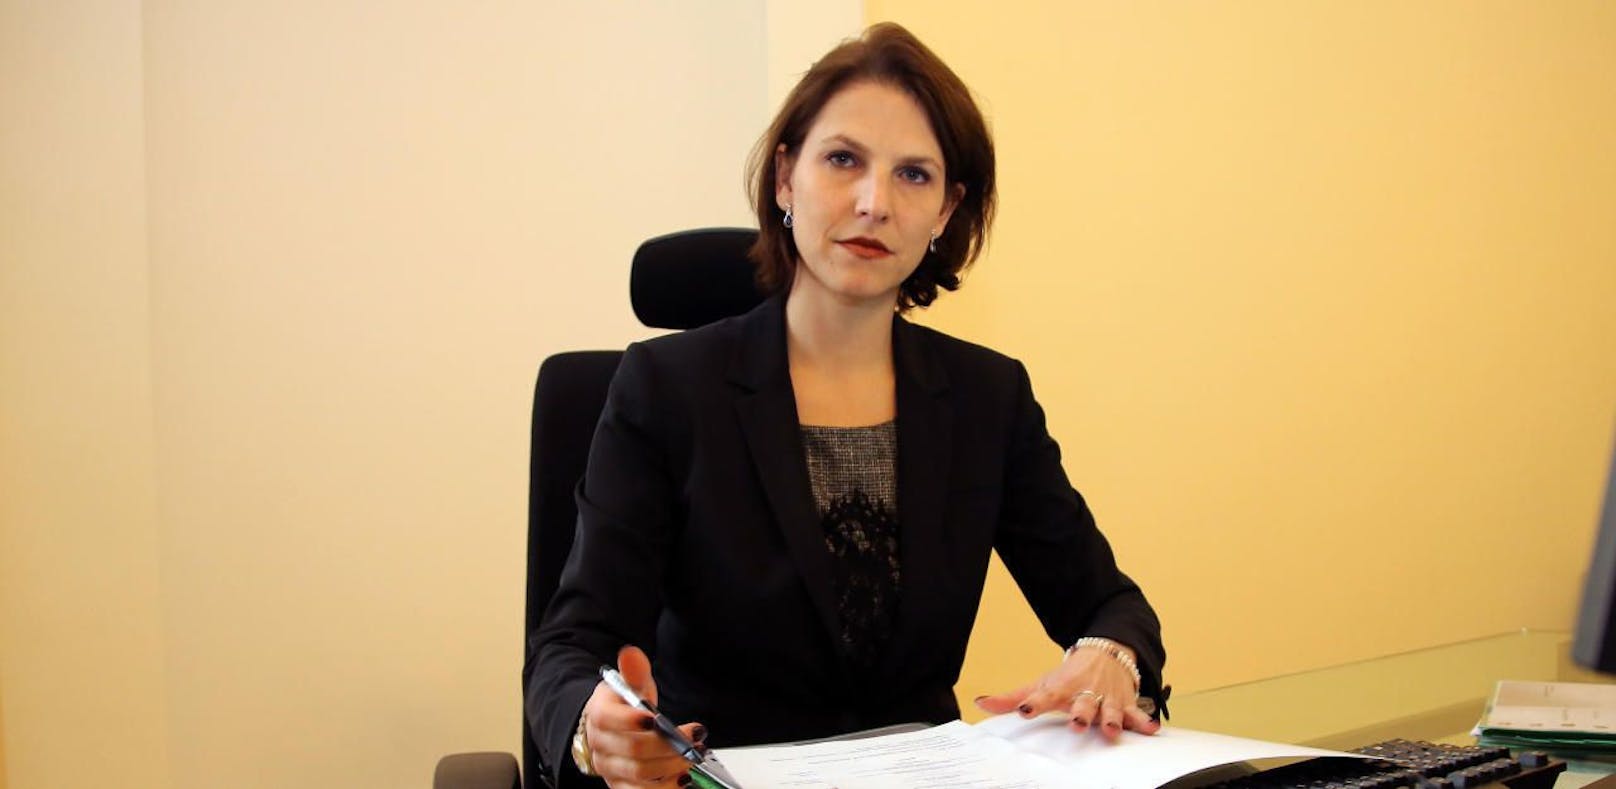 Karoline Edtstadler (ÖVP) ist seit dem 18. Dezember 2017 Staatssekretärin im Bundesministerium für Inneres.